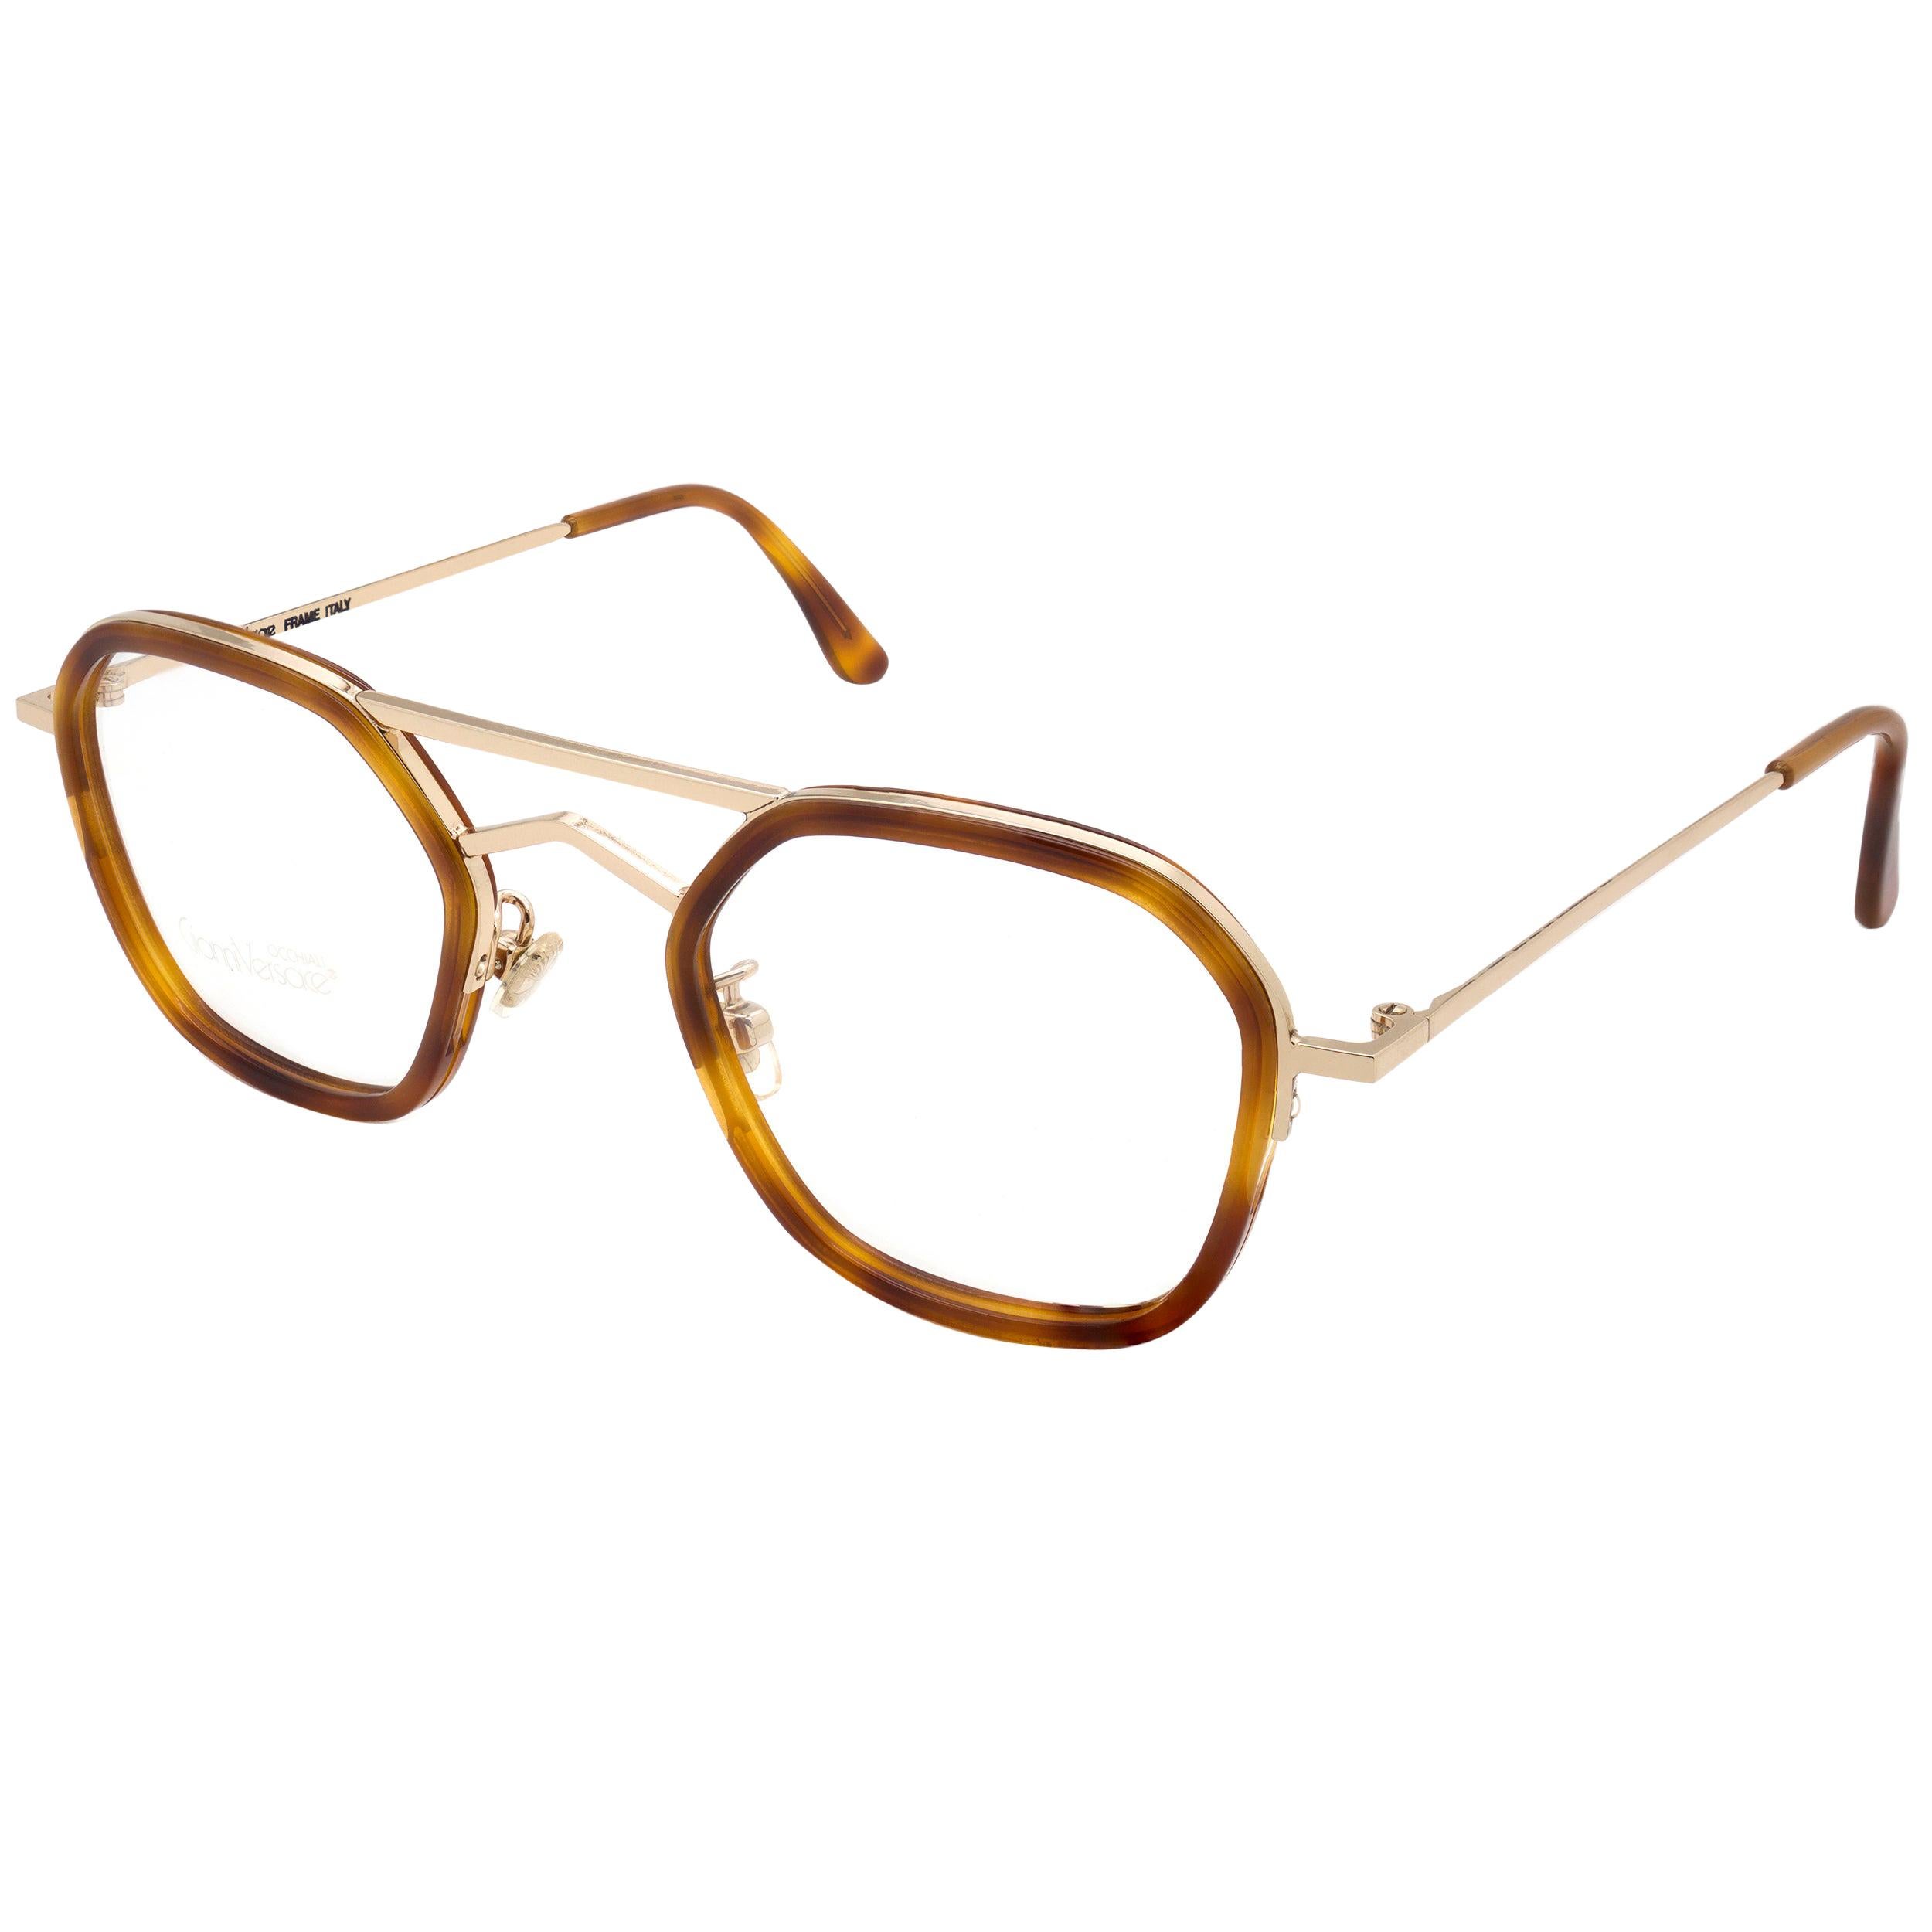 Gianni Versace vintage glasses frame For Sale